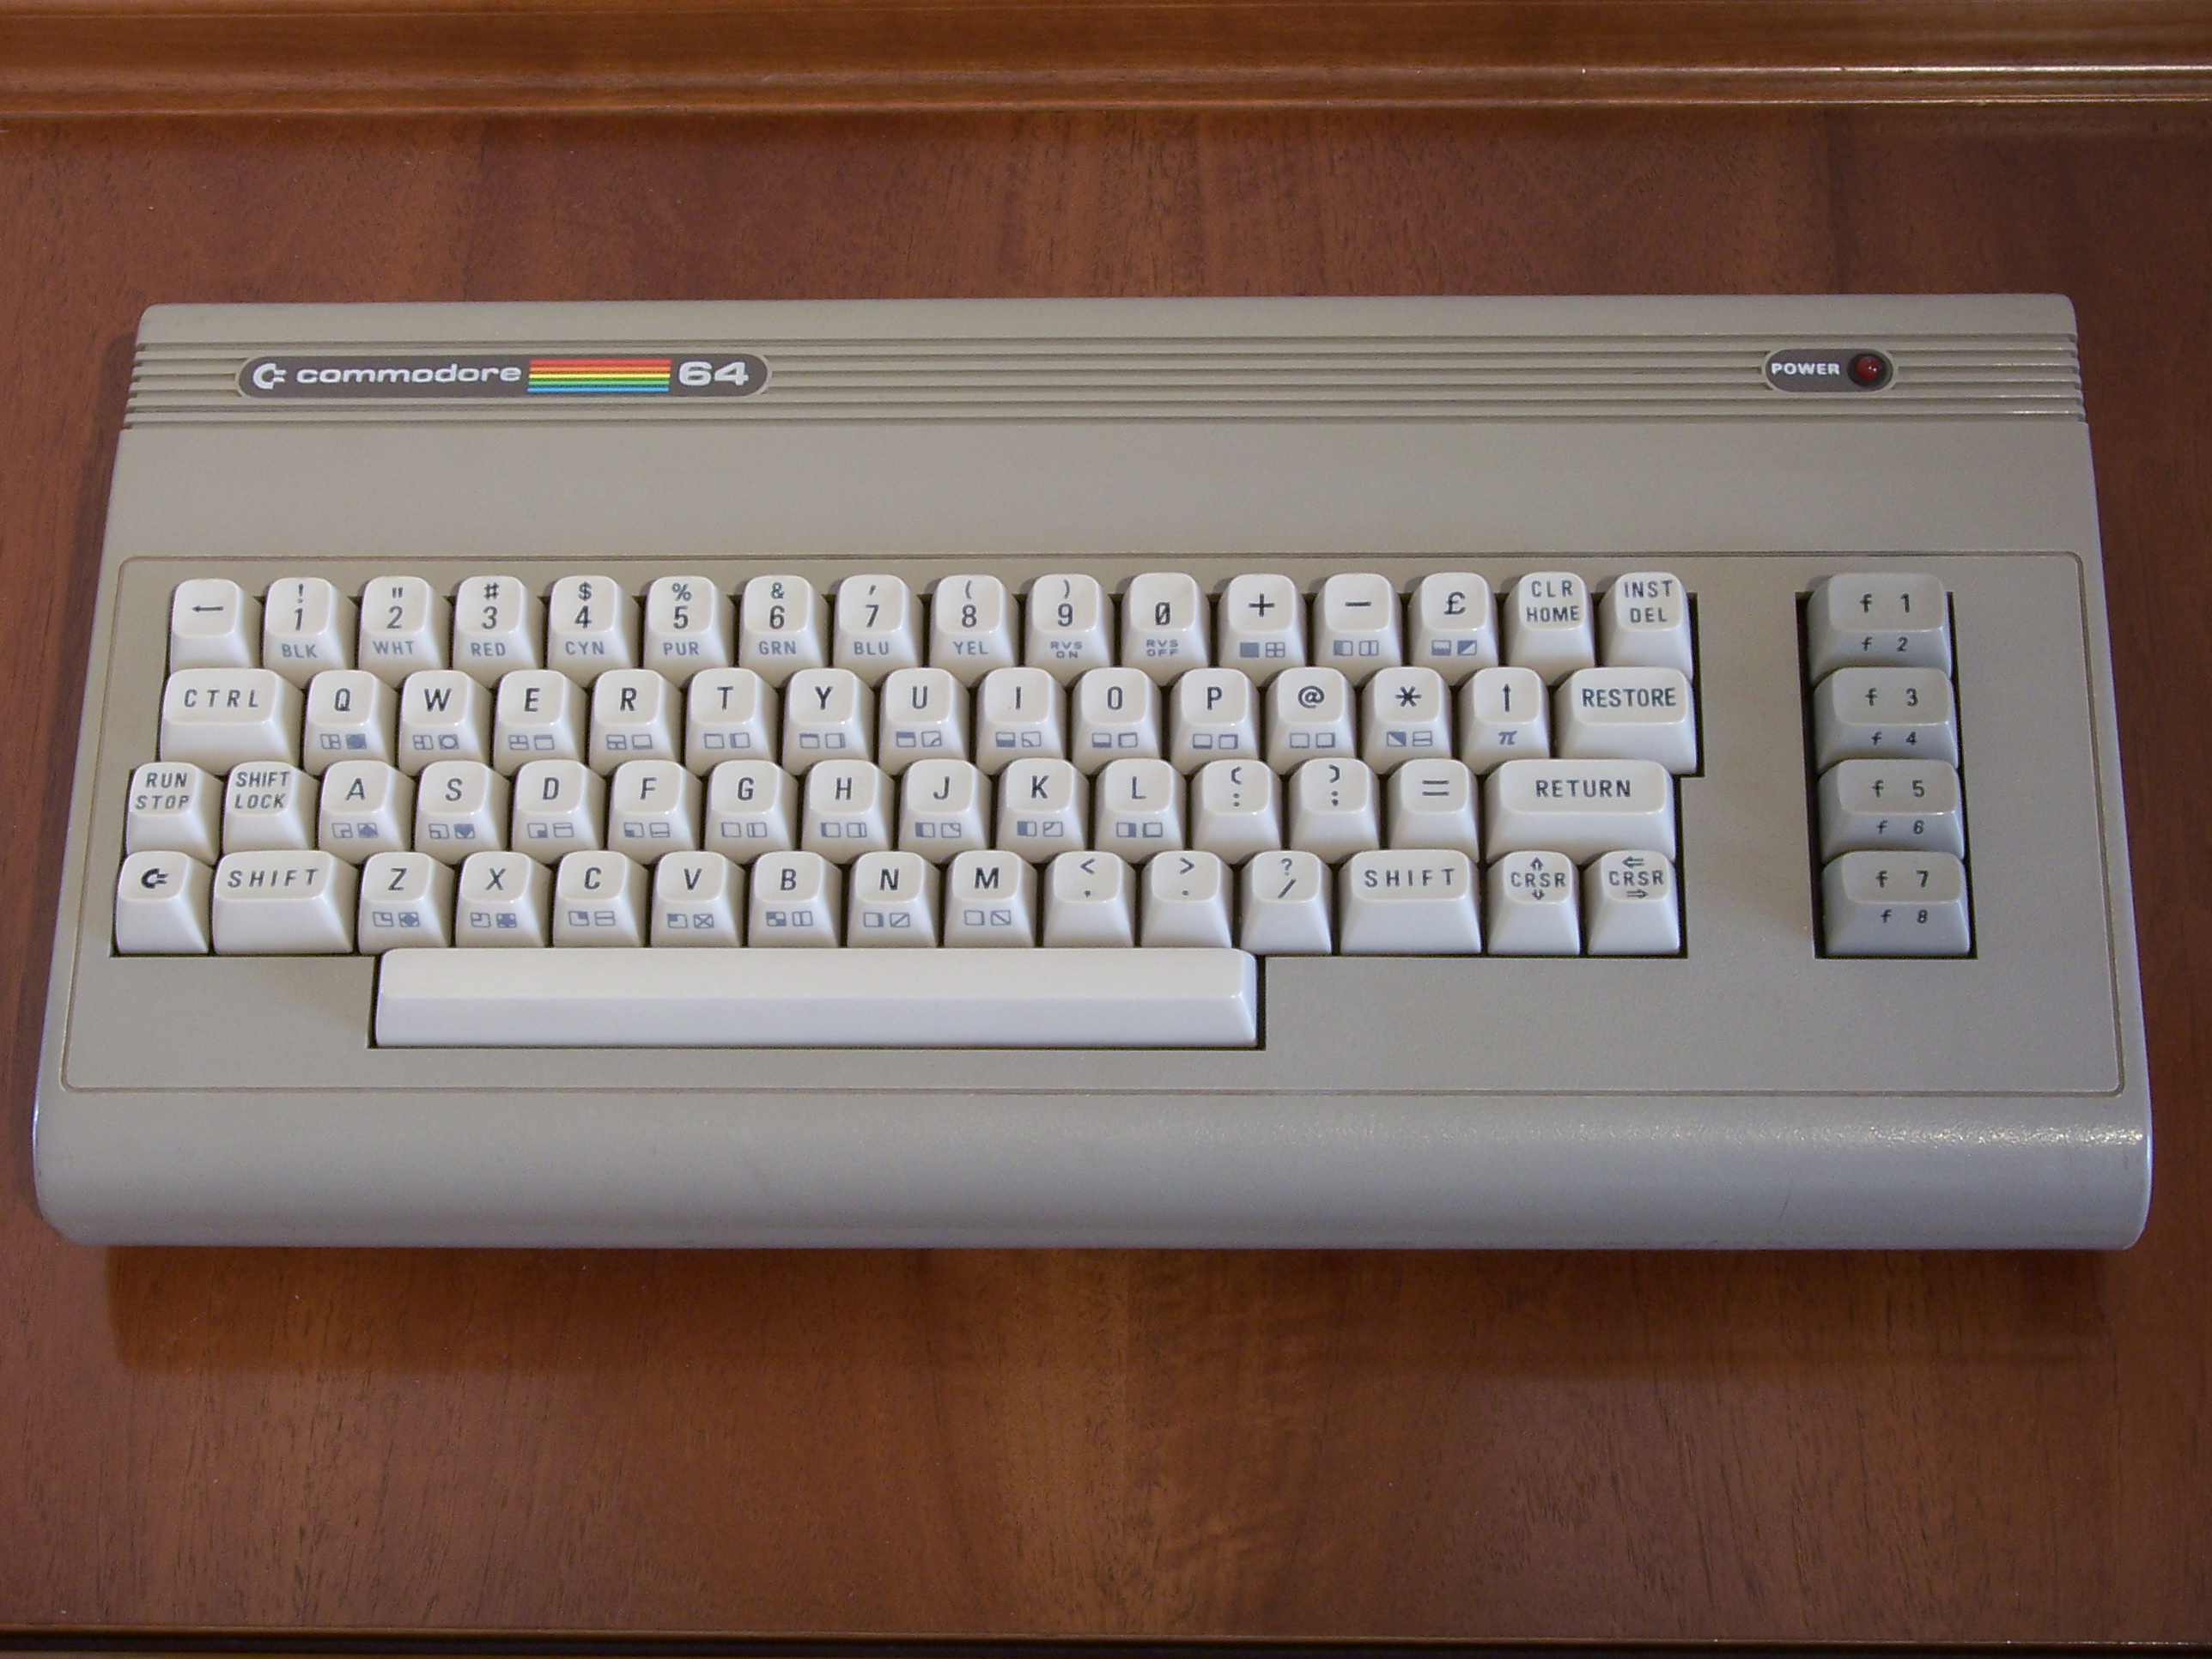 File:Tastiera Commodore 64 - Versione ALDI.JPG - Wikimedia Commons